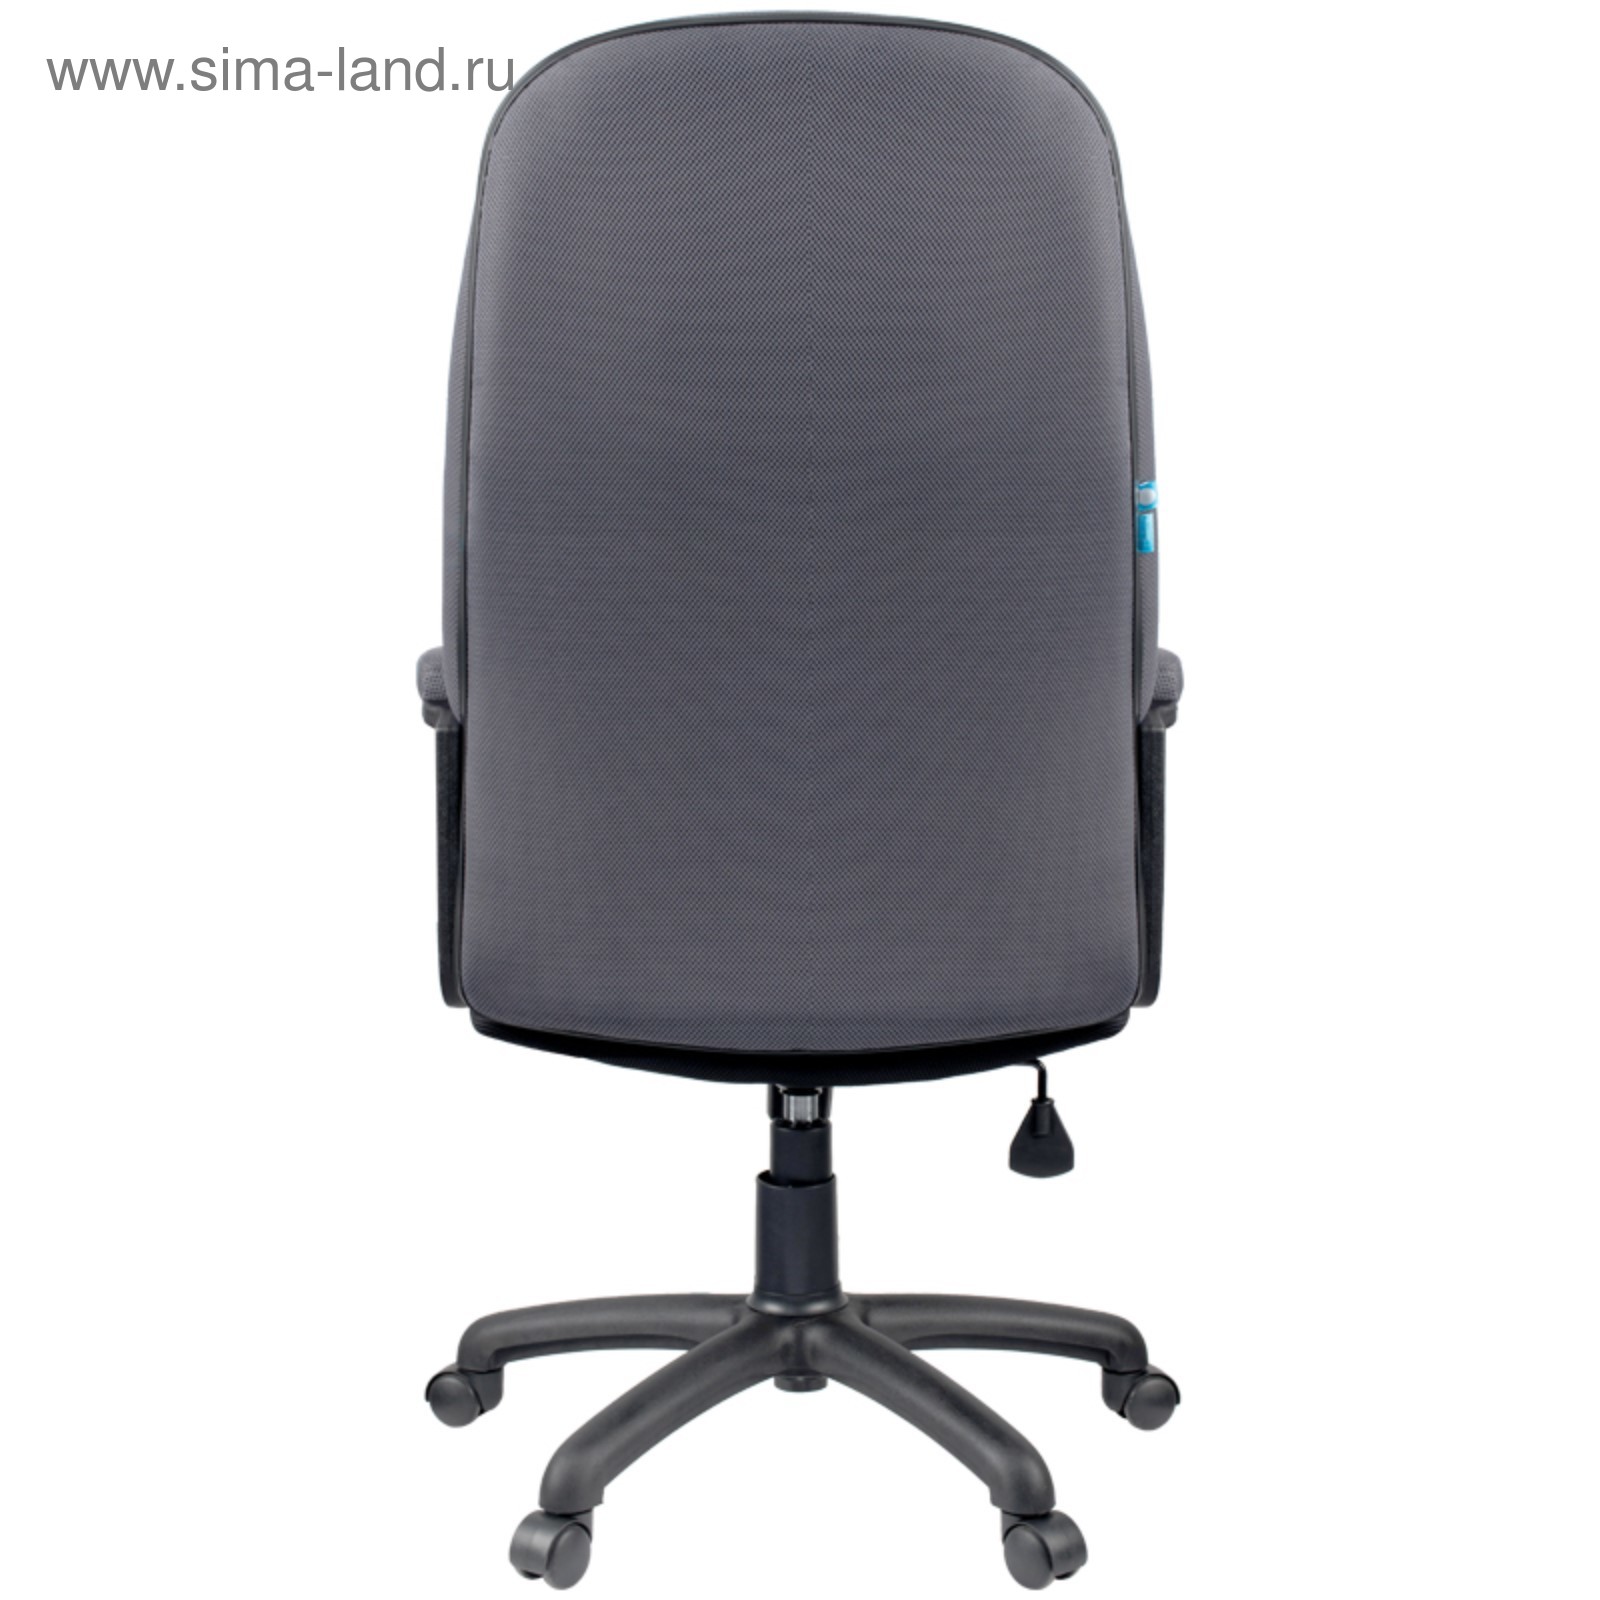 Кресло руководителя Helmi hl-e79, ткань TW черная/серая, 277897